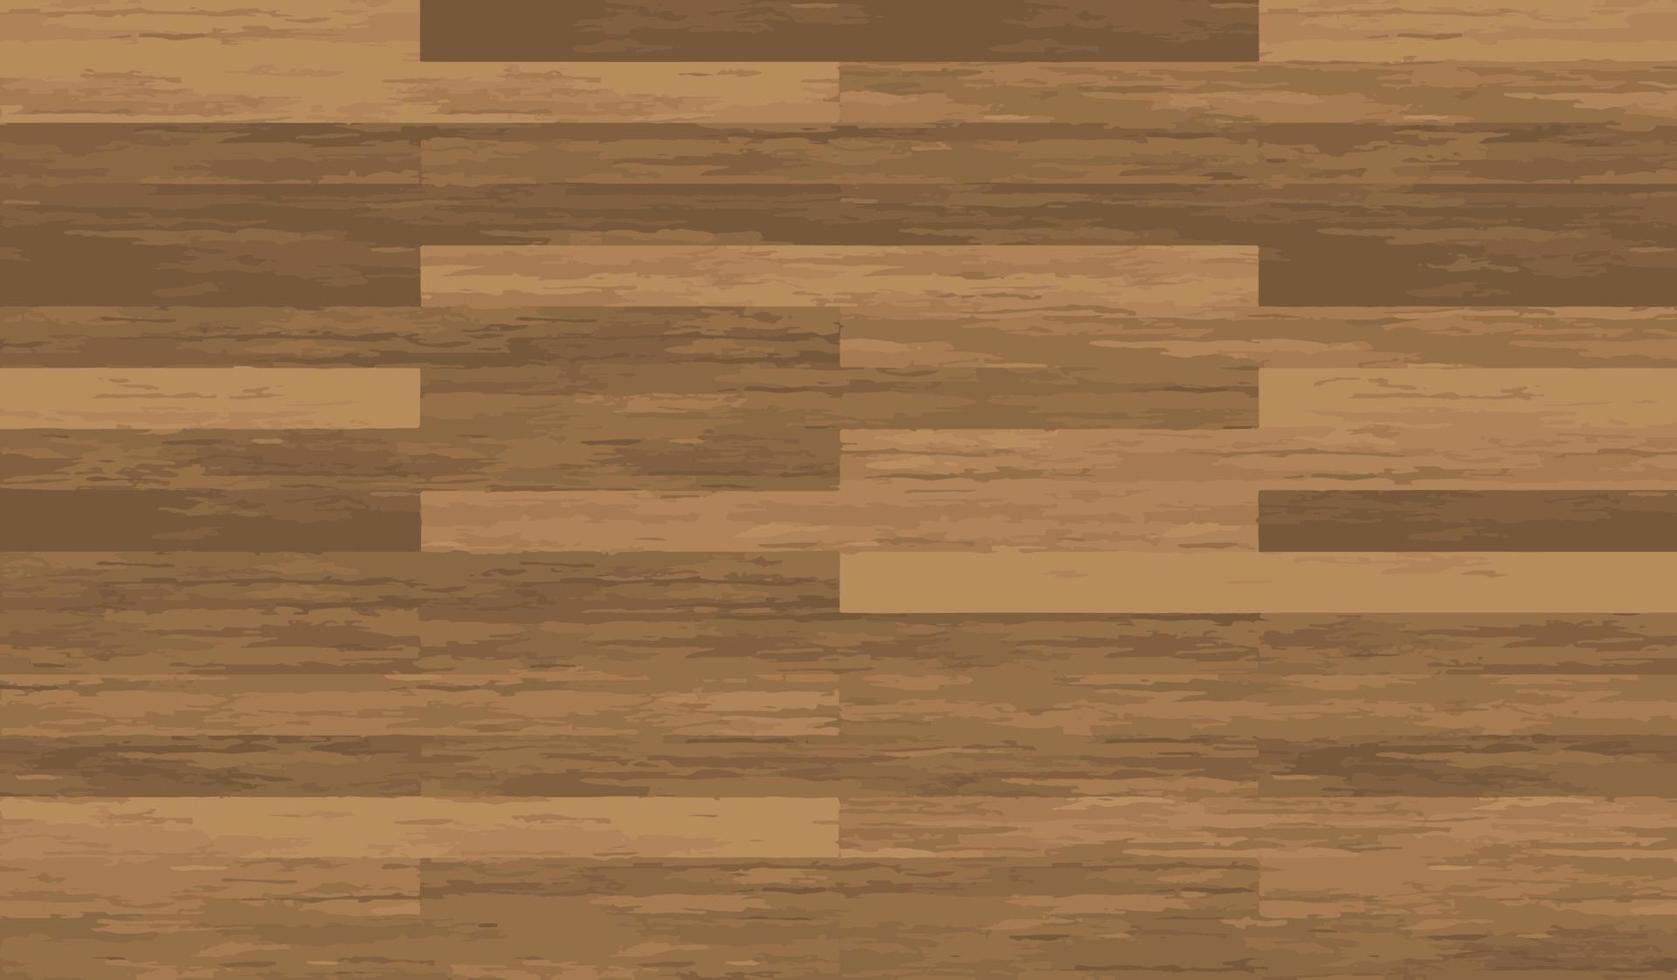 Wooden texture floor seamless background vector